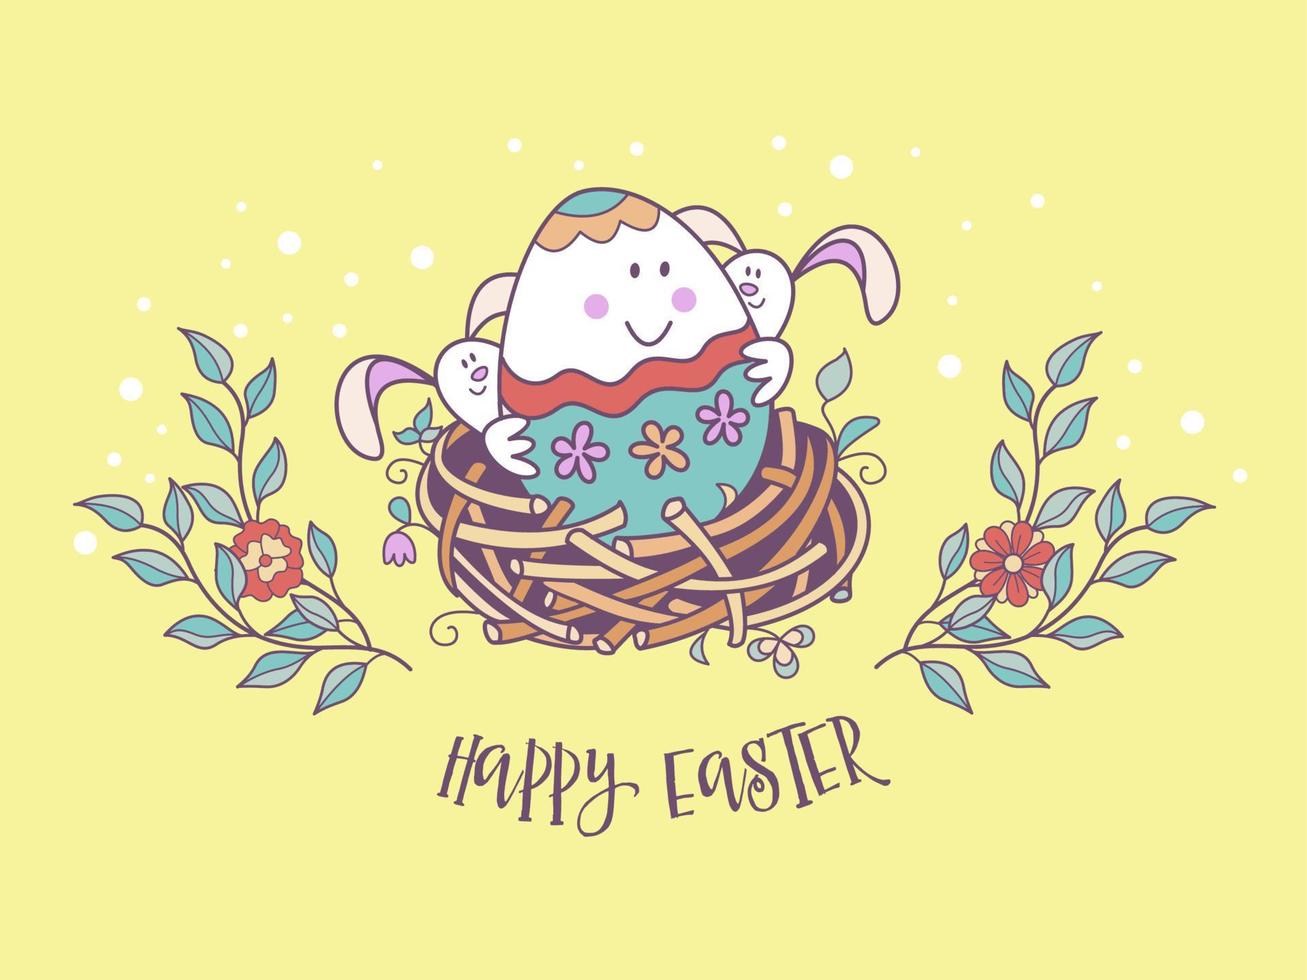 Buona Pasqua. illustrazione festiva vettoriale carino in stile cartone animato.